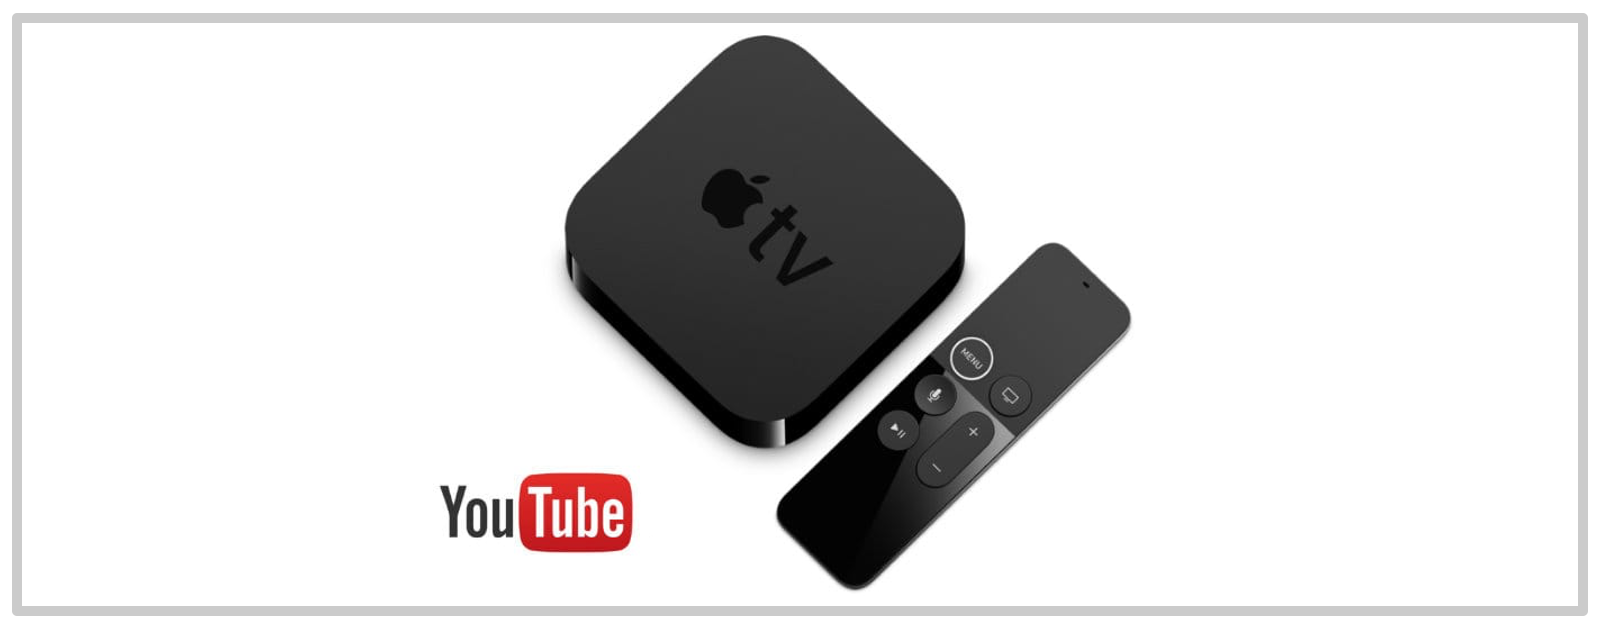 La aplicación YouTube Apple TV acaba de recibir un gran rediseño